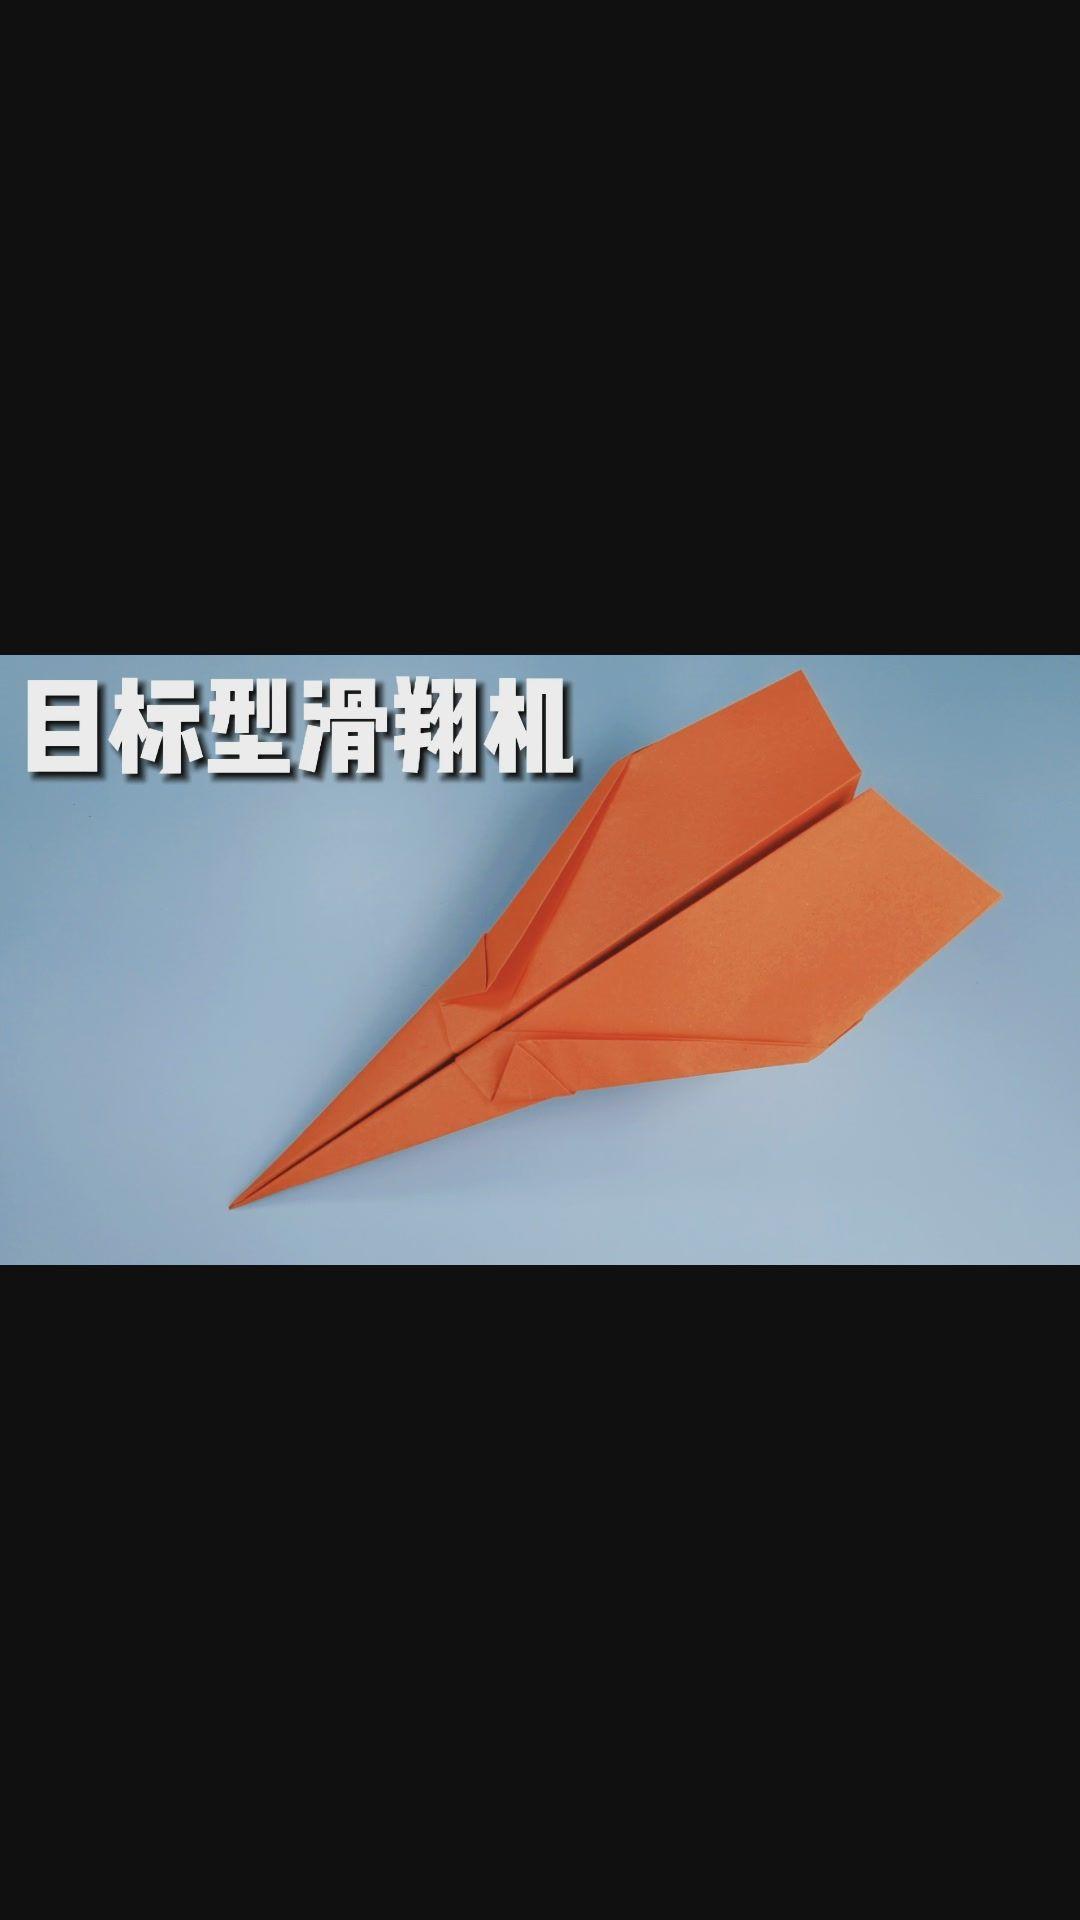 像小鸟一样扇动翅膀的纸飞机,好玩好看,折法很简单.